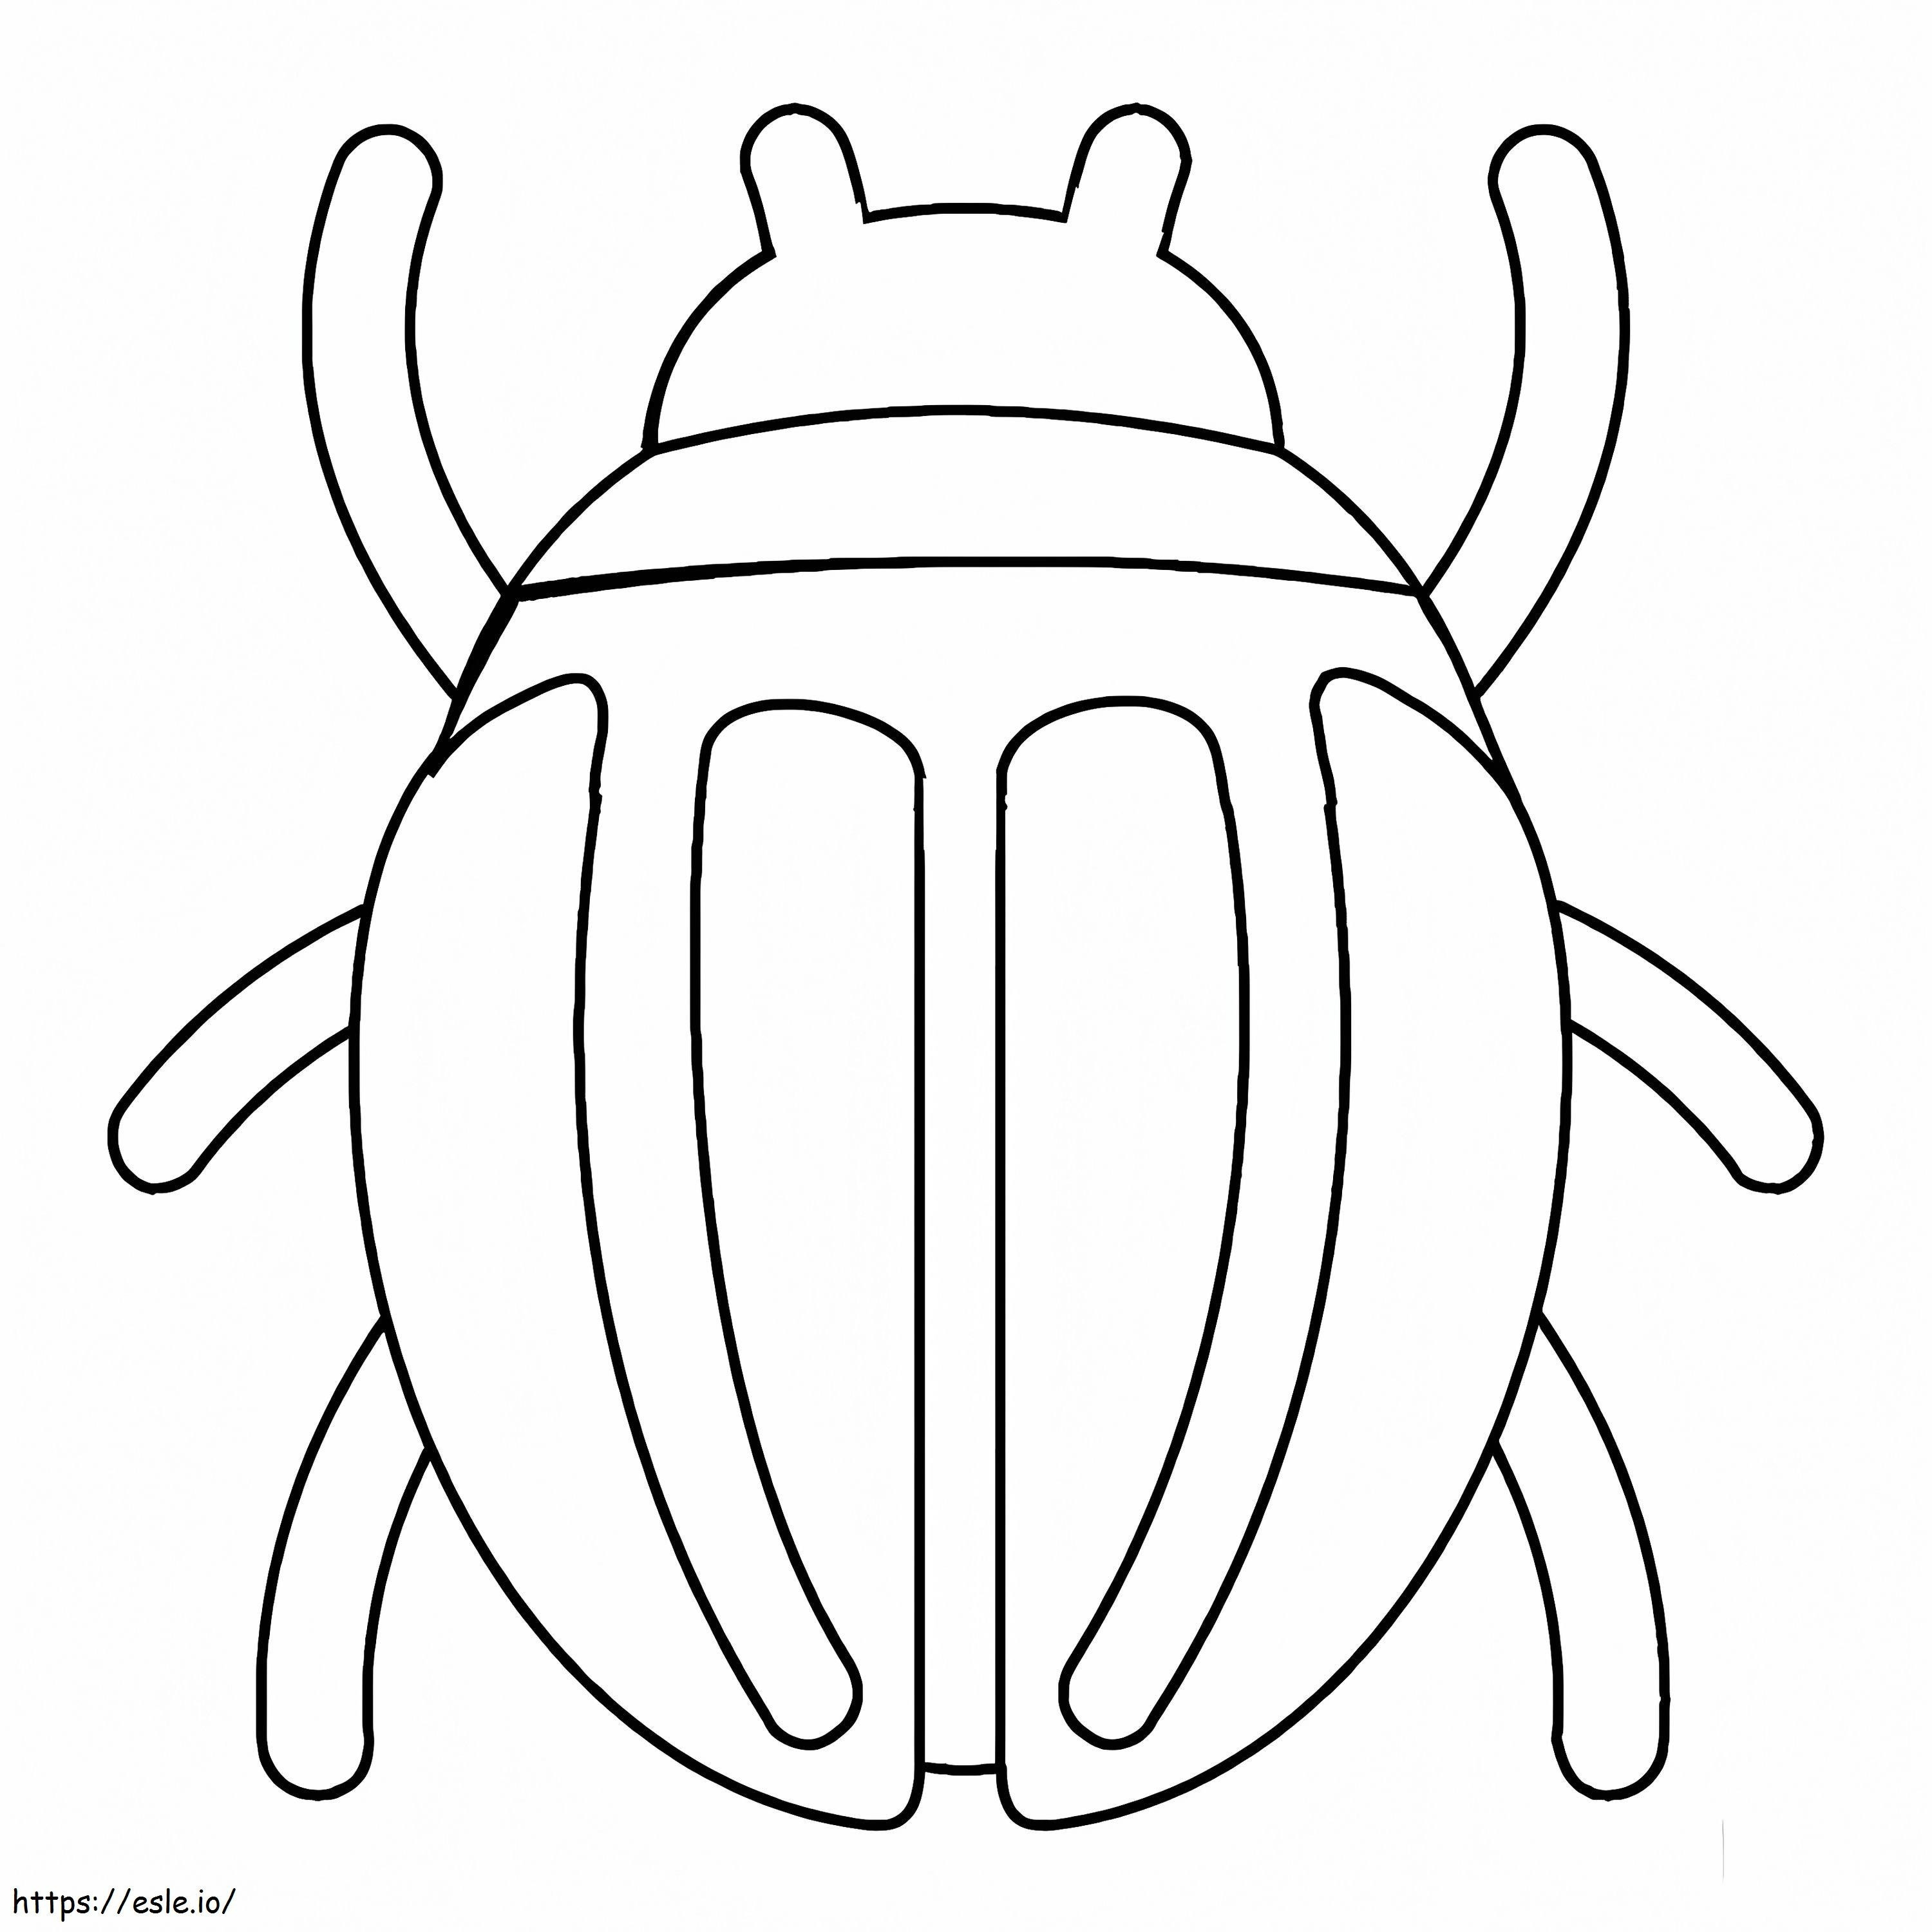 Einfacher Käfer ausmalbilder